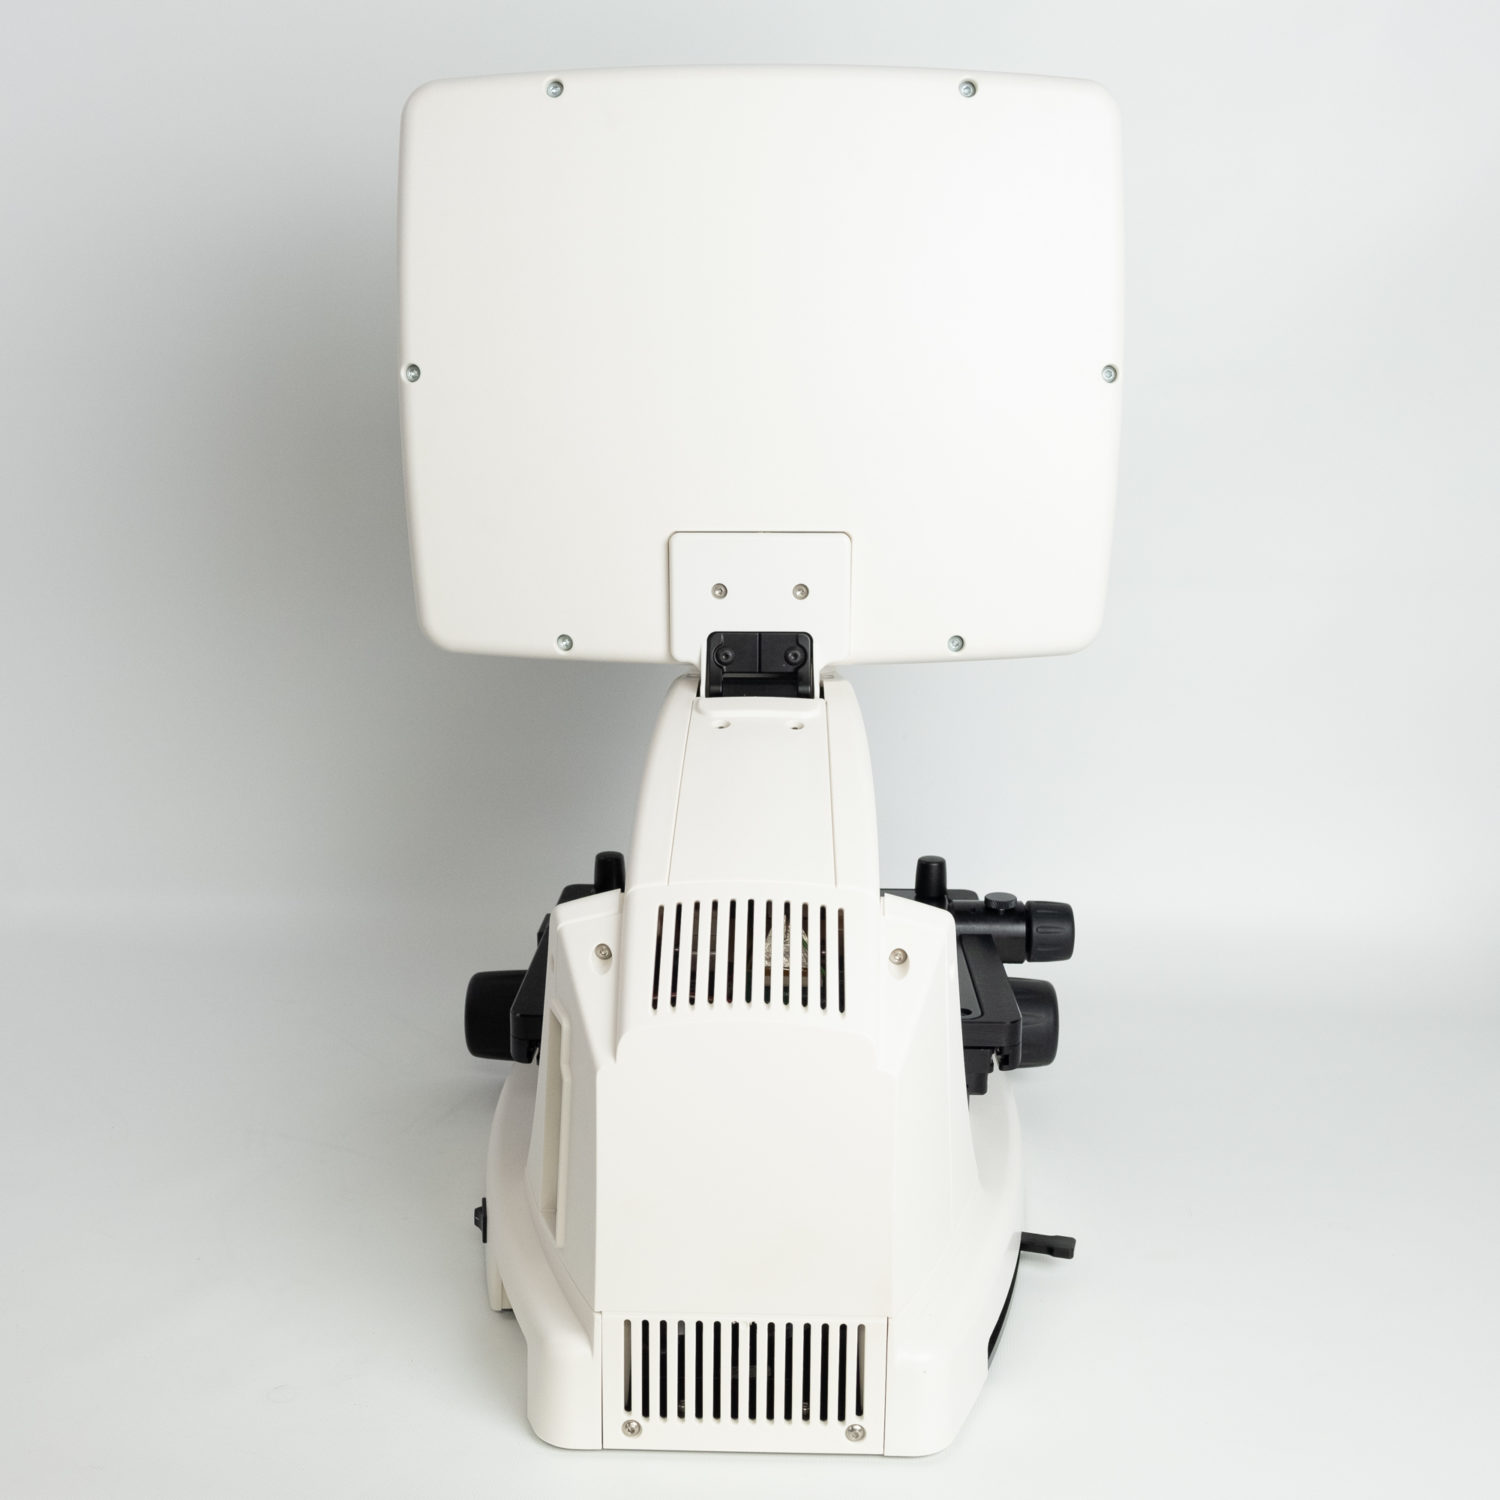 Invitrogen EVOS™ FL Imaging System